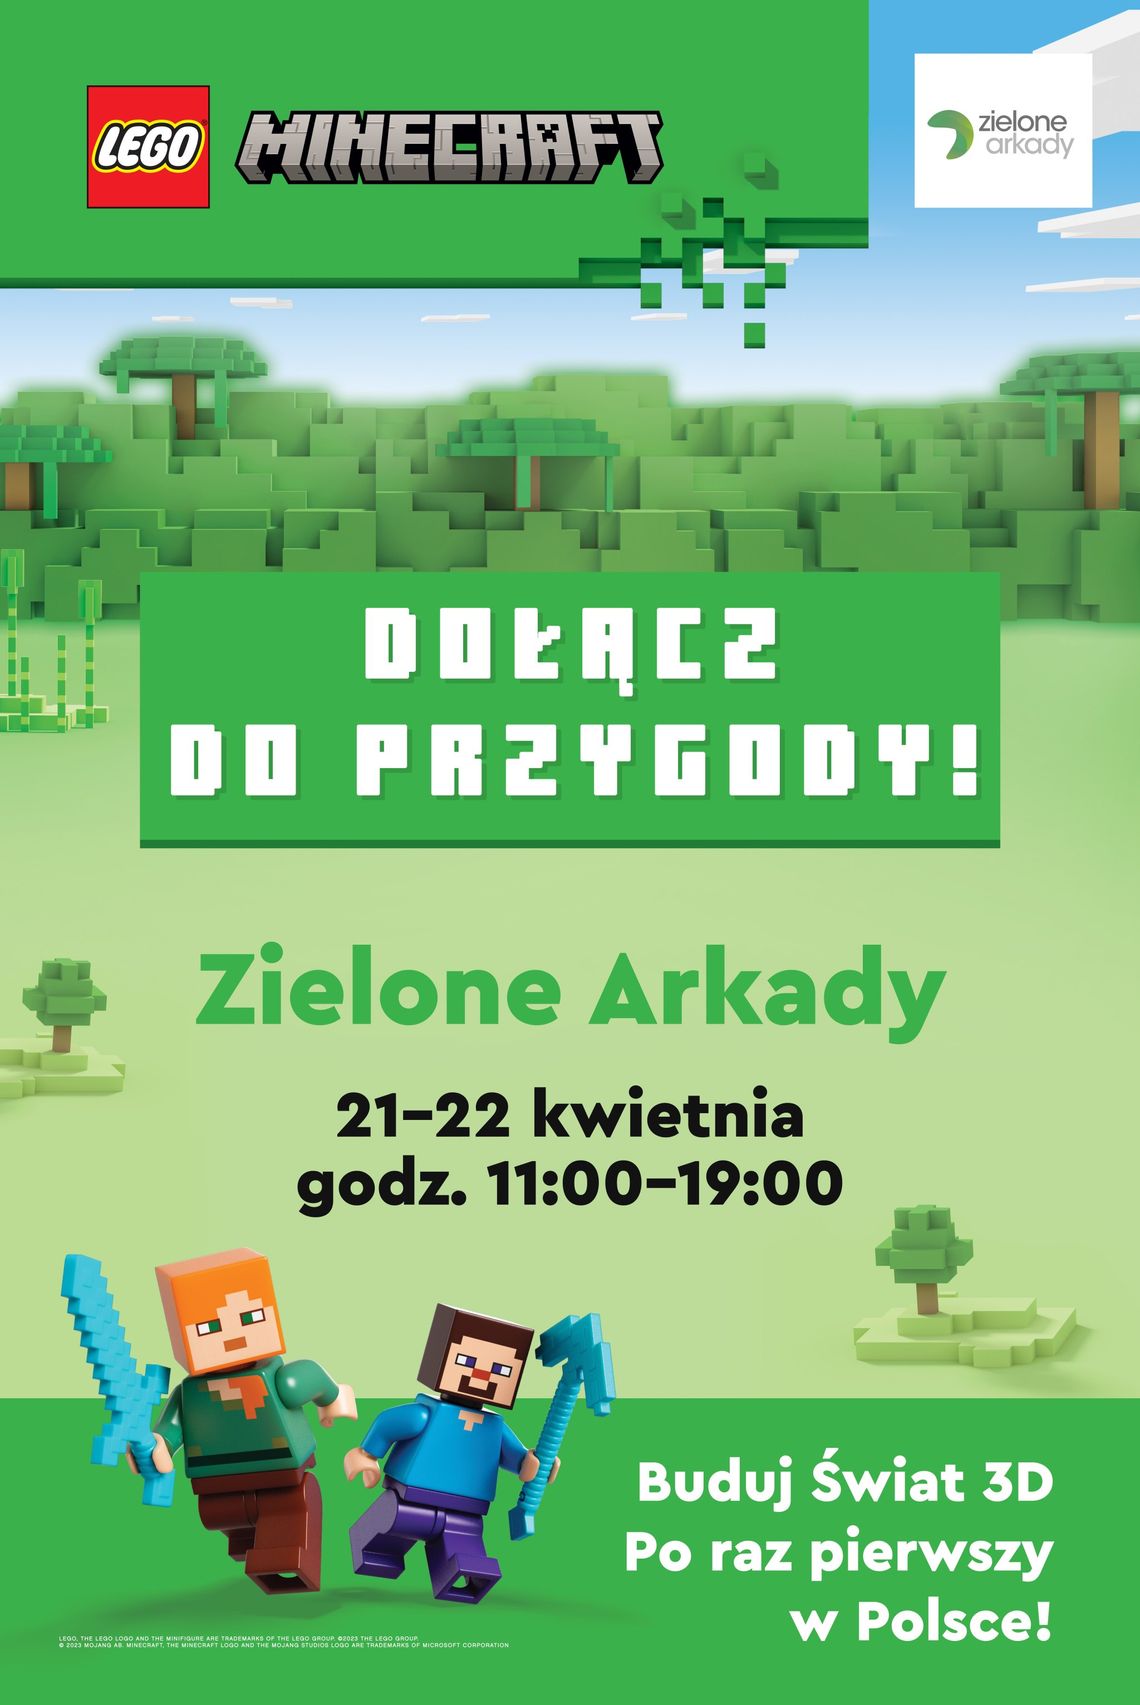 Pierwsze w Polsce wielkie budowanie LEGO Minecraft w Zielonych Arkadach!